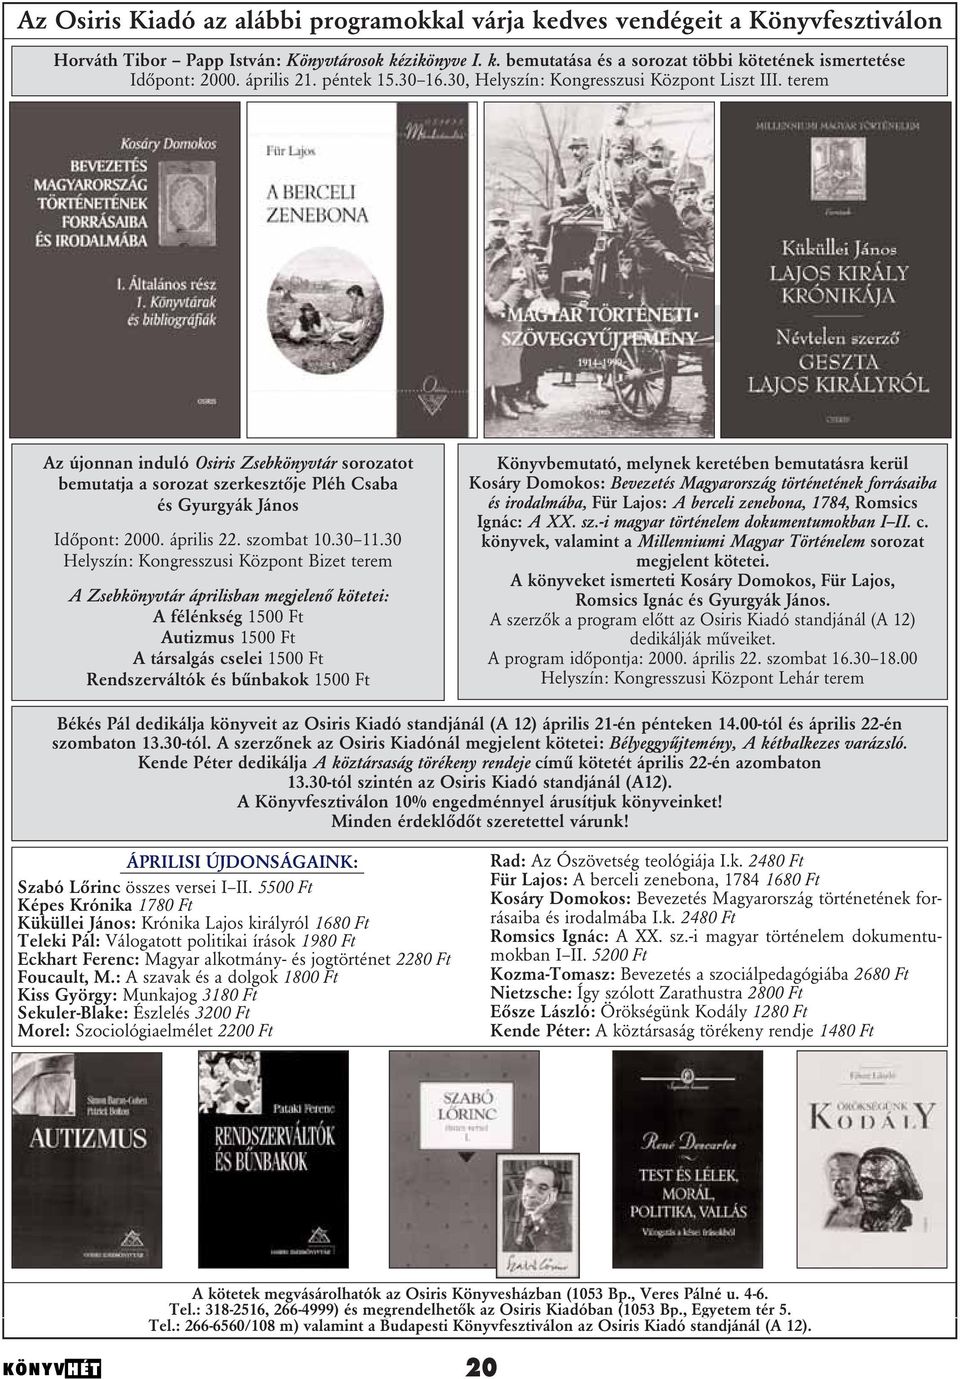 terem Az újonnan induló Osiris Zsebkönyvtár sorozatot bemutatja a sorozat szerkesztôje Pléh Csaba és Gyurgyák János Idôpont: 2000. április 22. szombat 10.30 11.